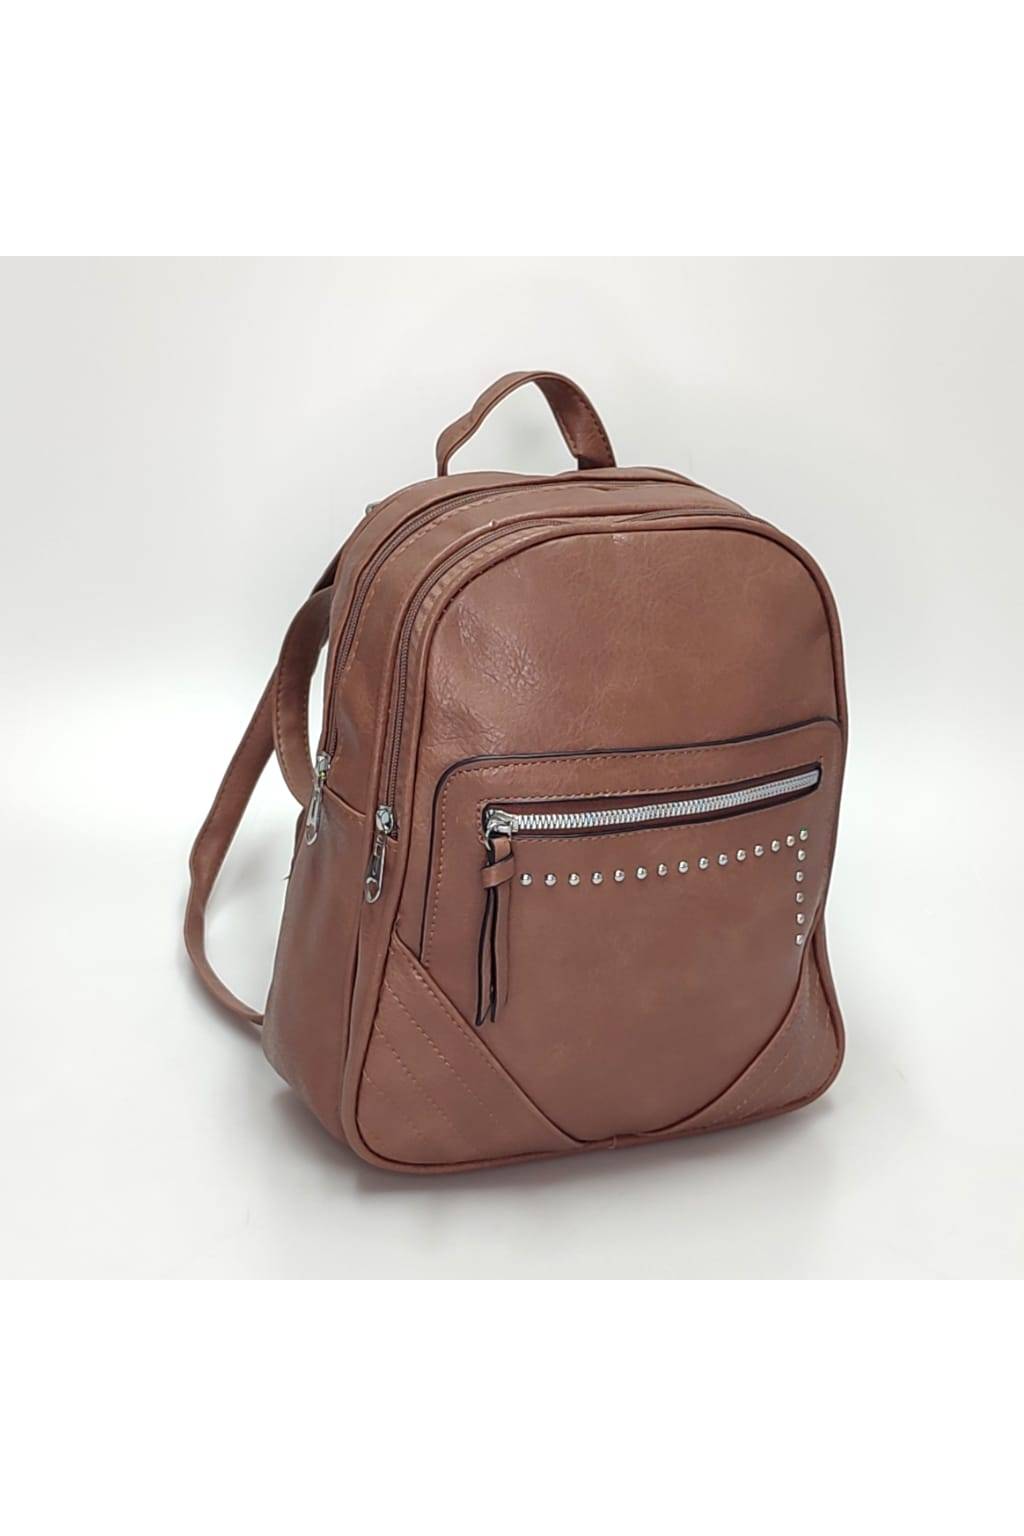 Dámsky ruksak 6301 staroružový www.kabelky vypredaj (3)